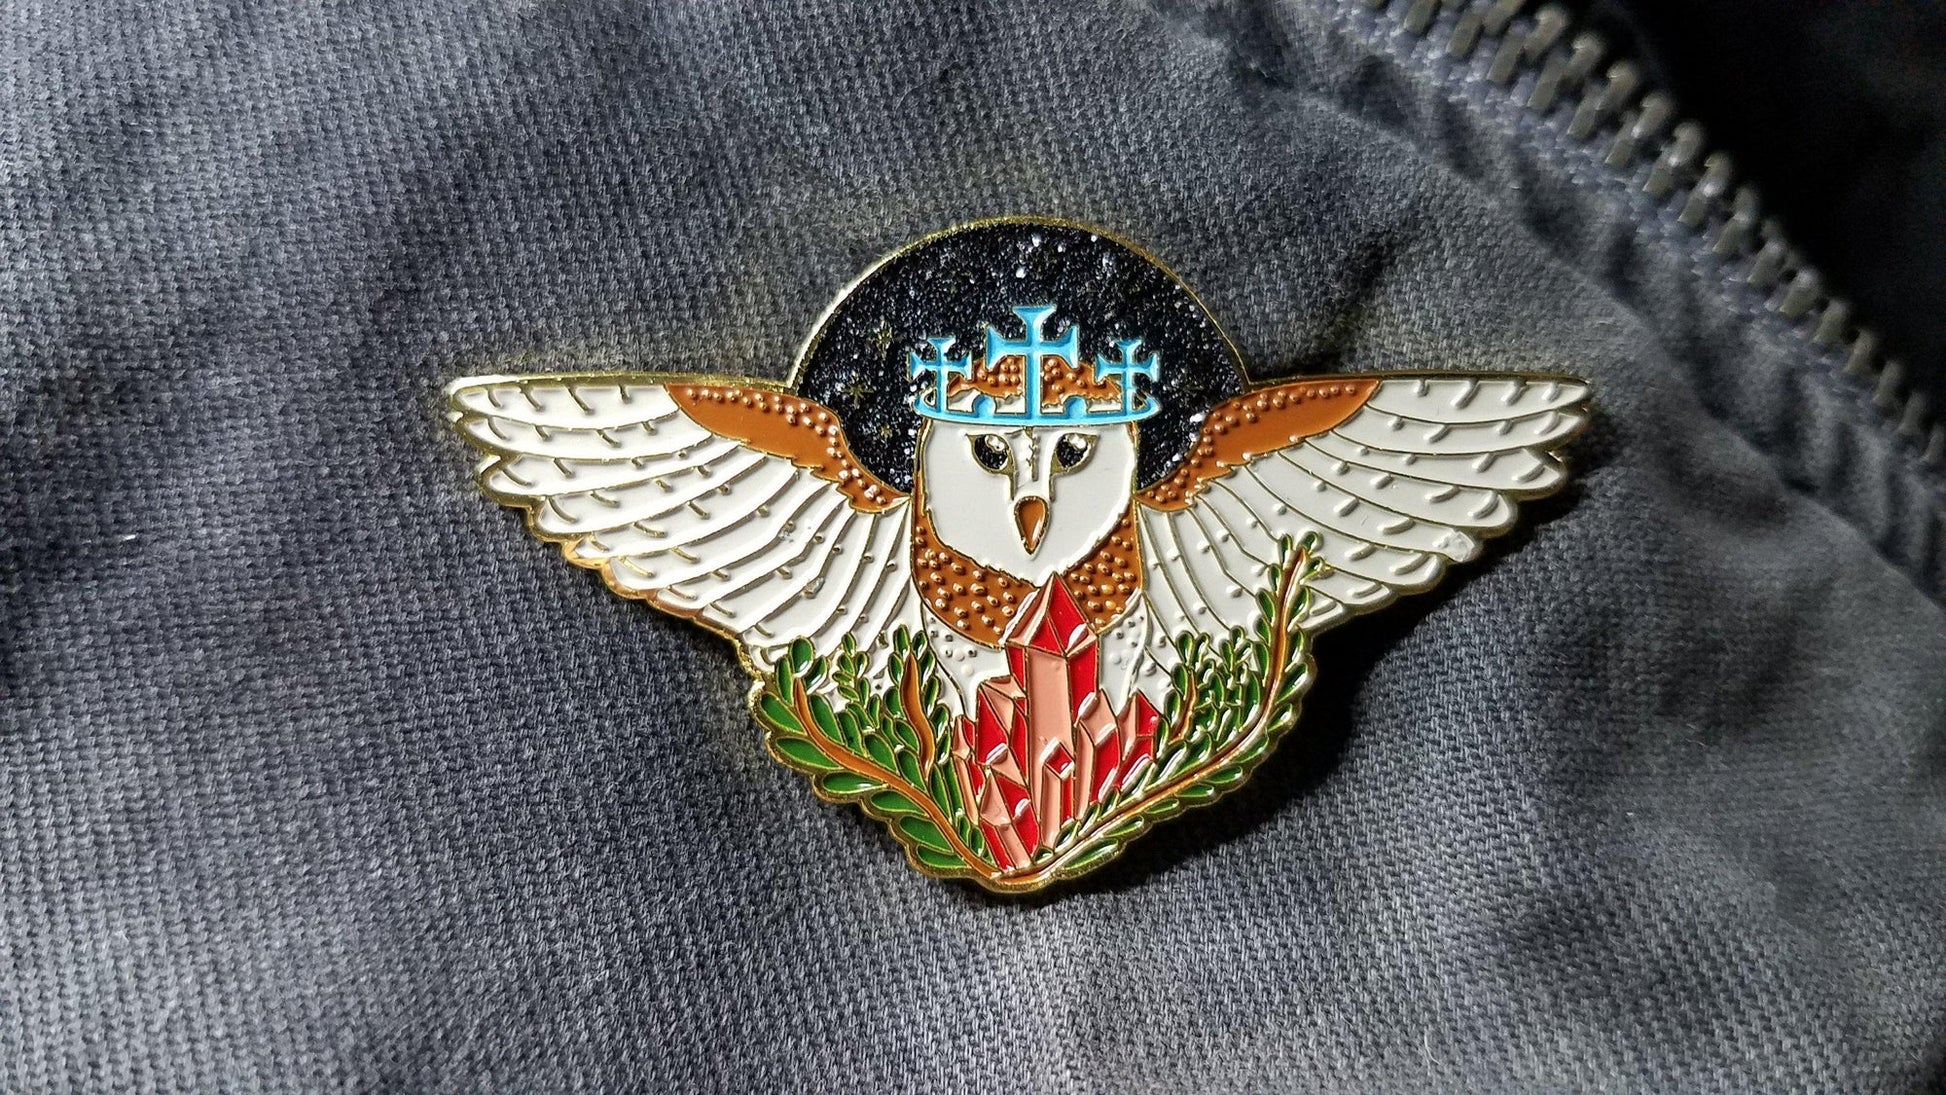 Prince stolas owl pin